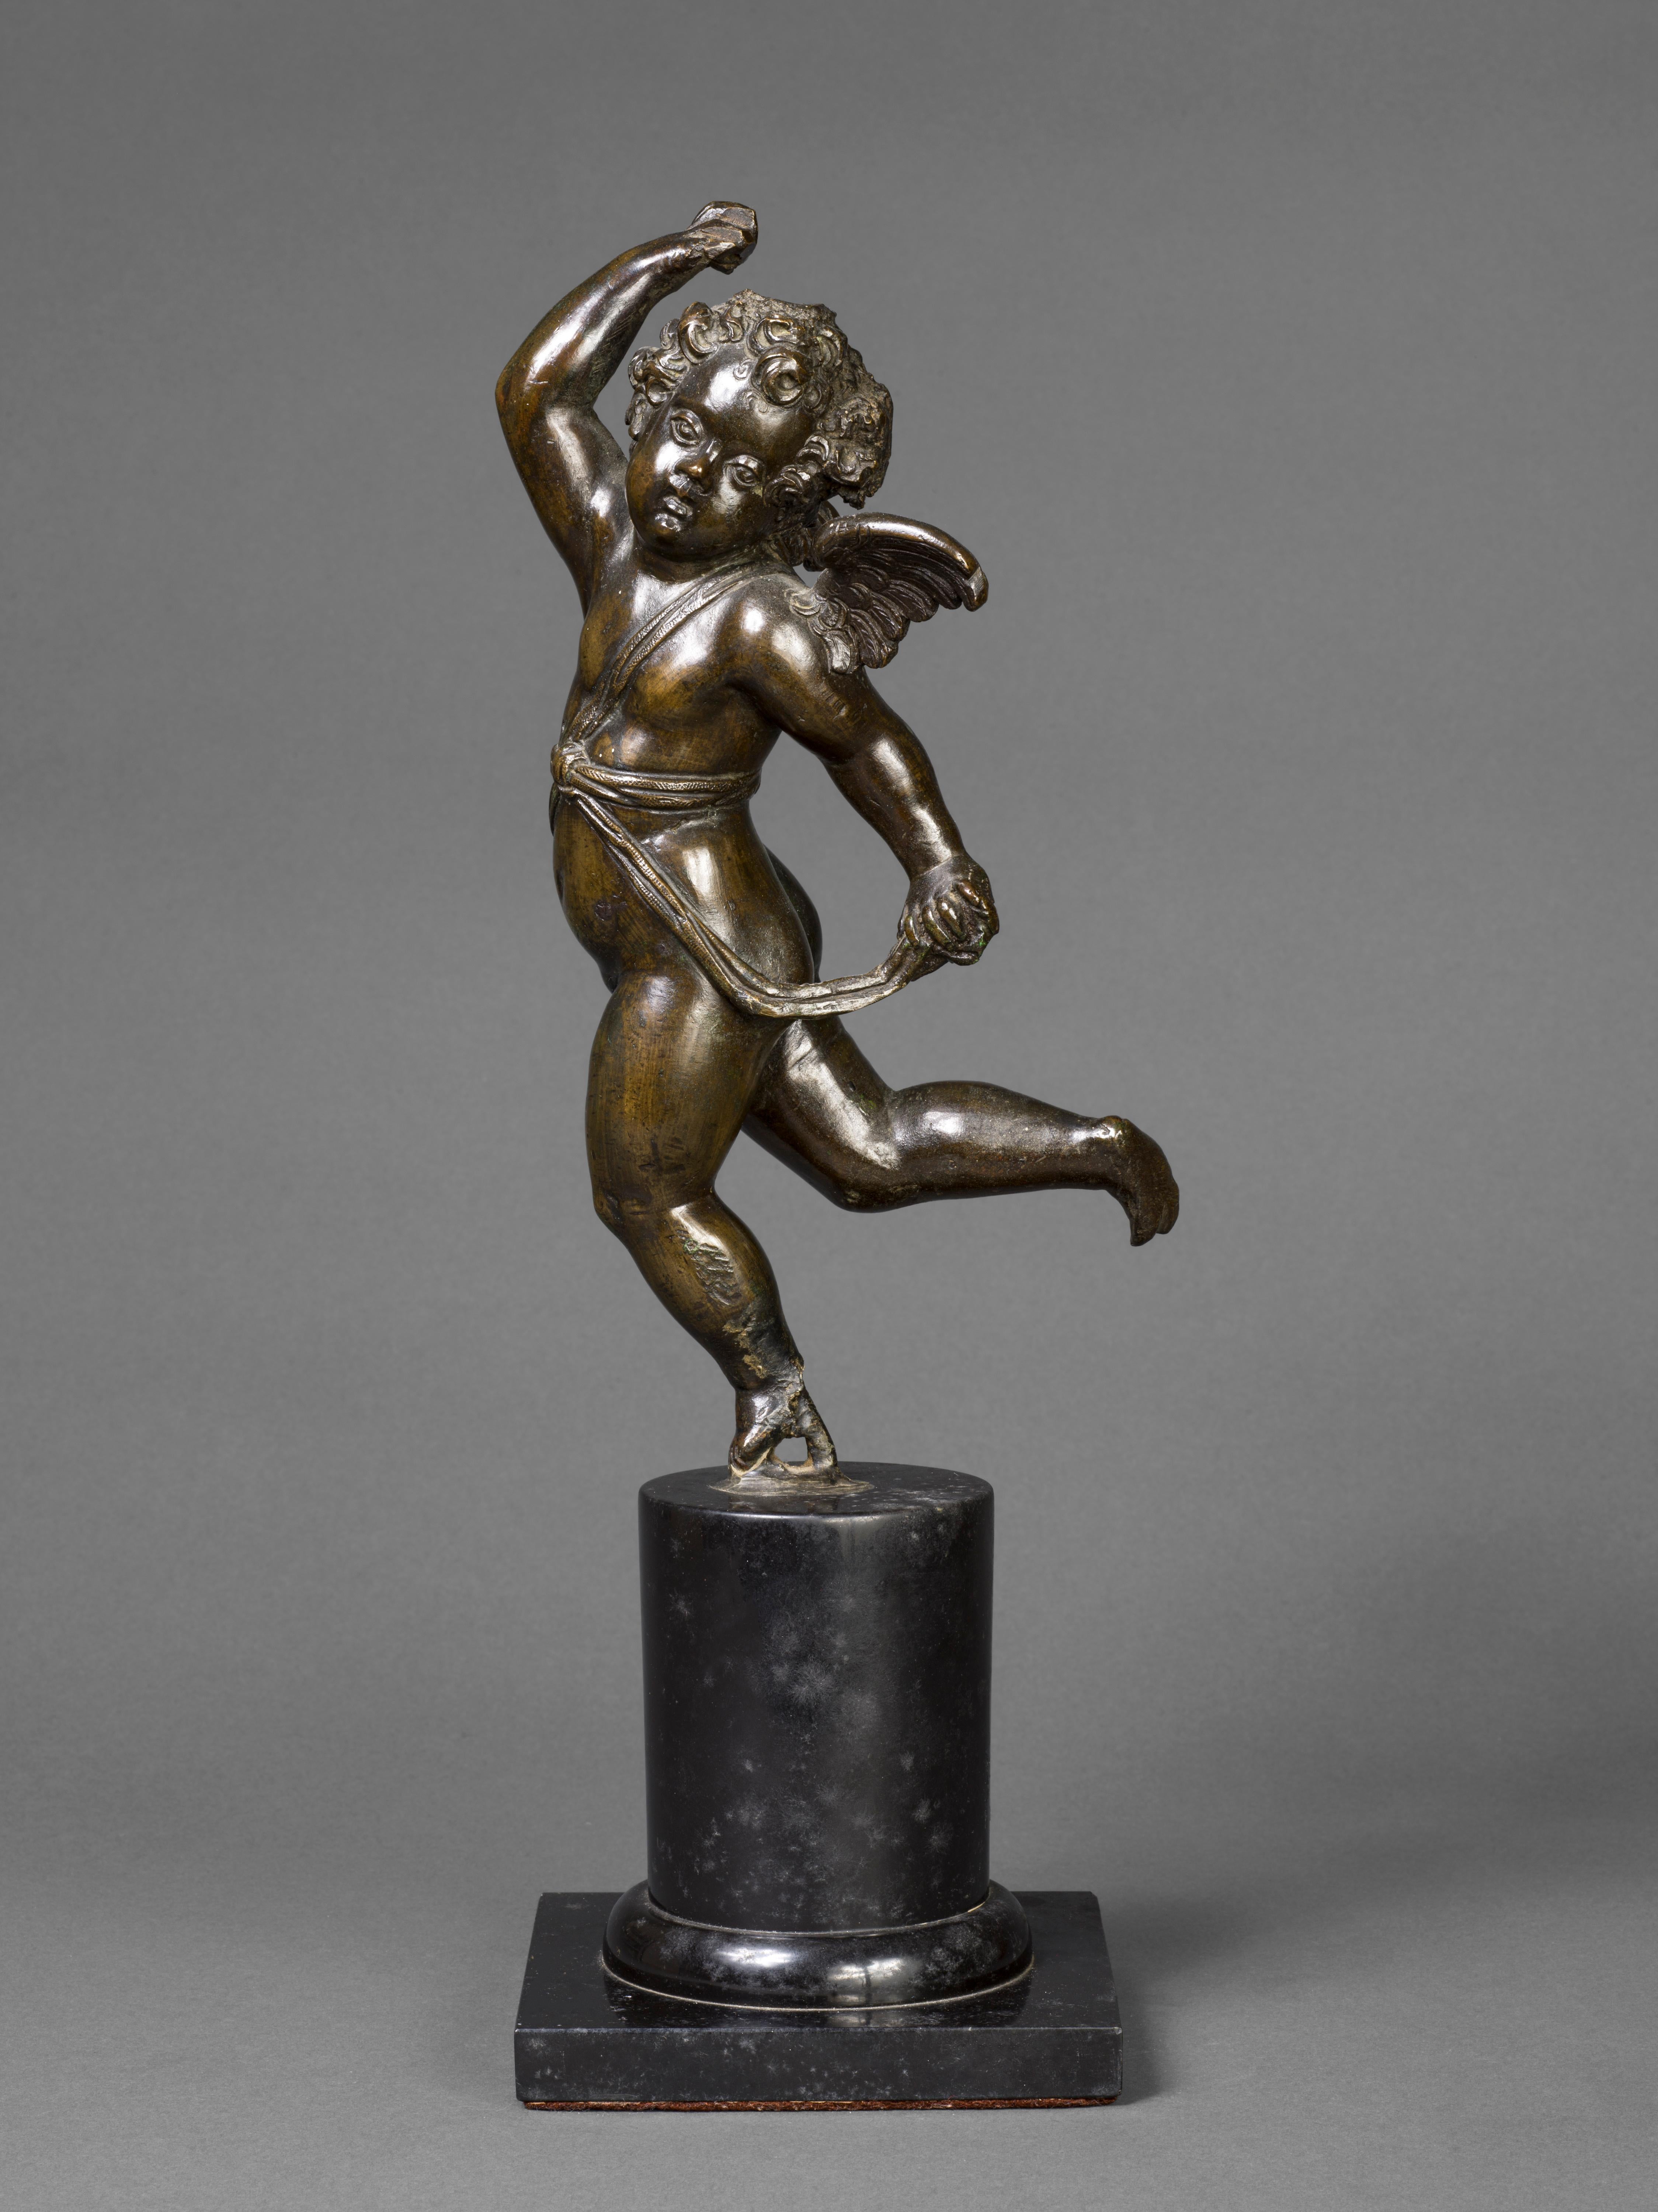 Italian Bronze Figure of a Winged Cherub (Putto)